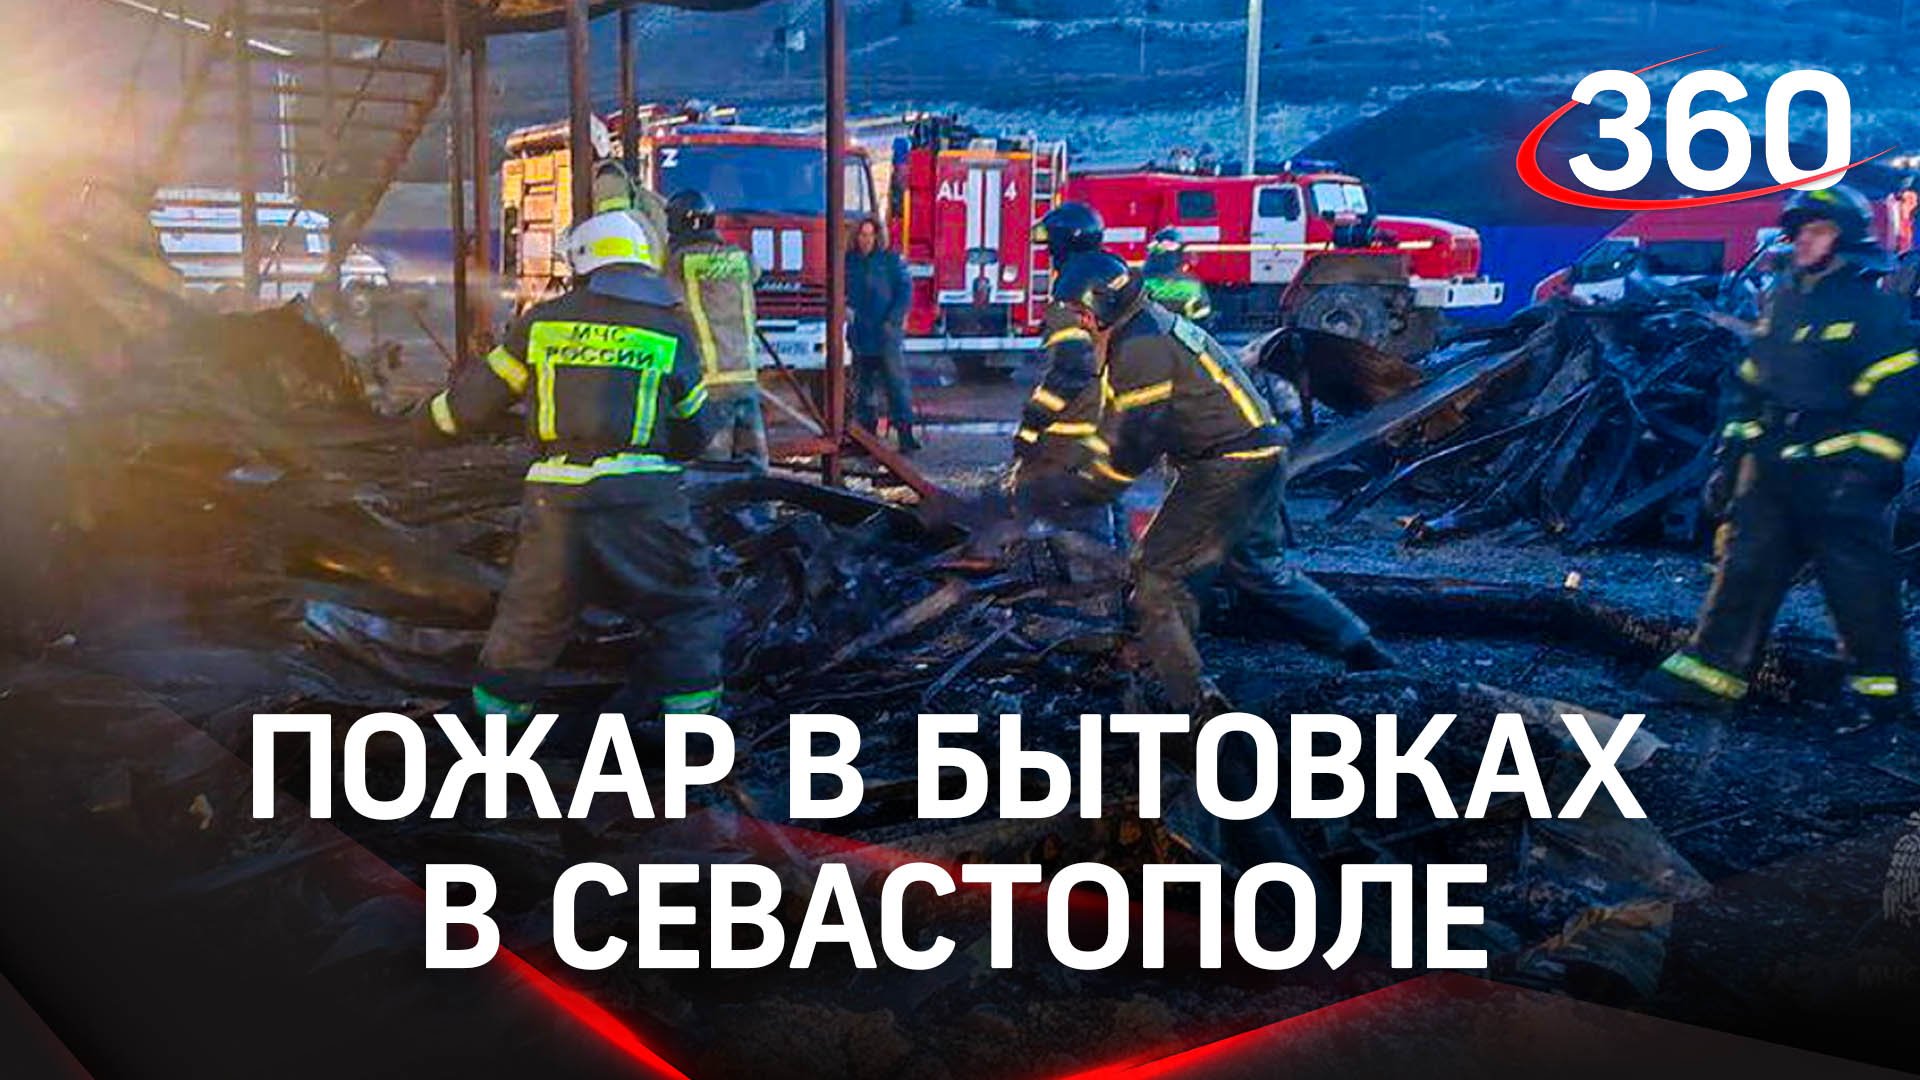 Восемь рабочих погибло во время пожара в бытовках в Севастополе